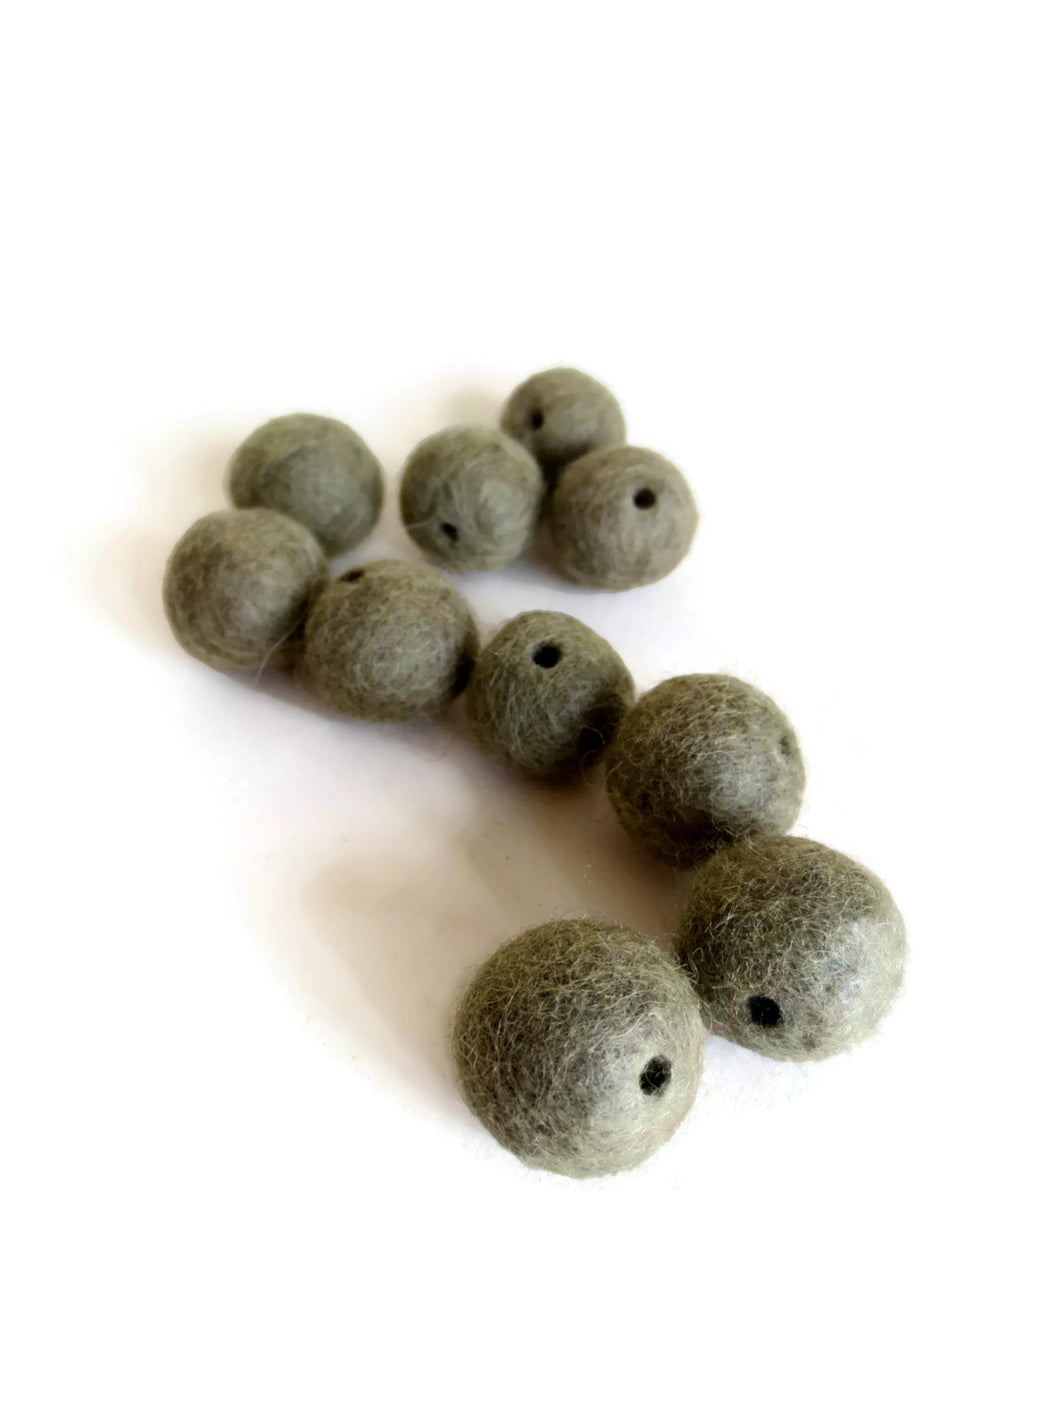 MOSS GREEN felt beads - 10 pack